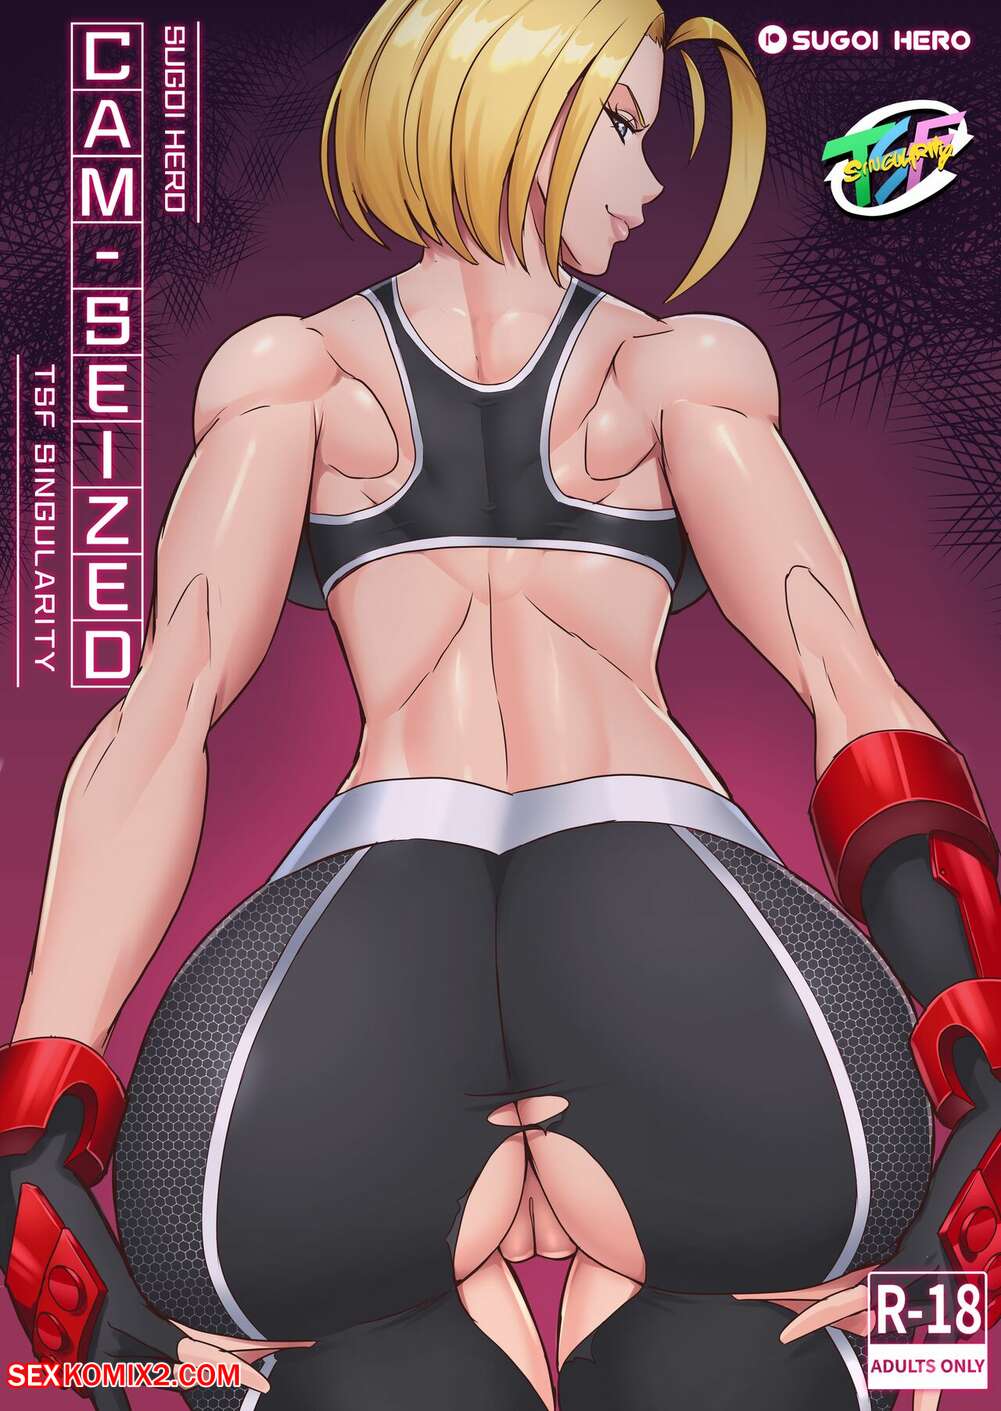 1001px x 1411px - âœ…ï¸ Porn comic CamSeized. Street Fighter 6. Sugoi Hero. Sex comic hot sexy  babes | Porn comics in English for adults only | sexkomix2.com